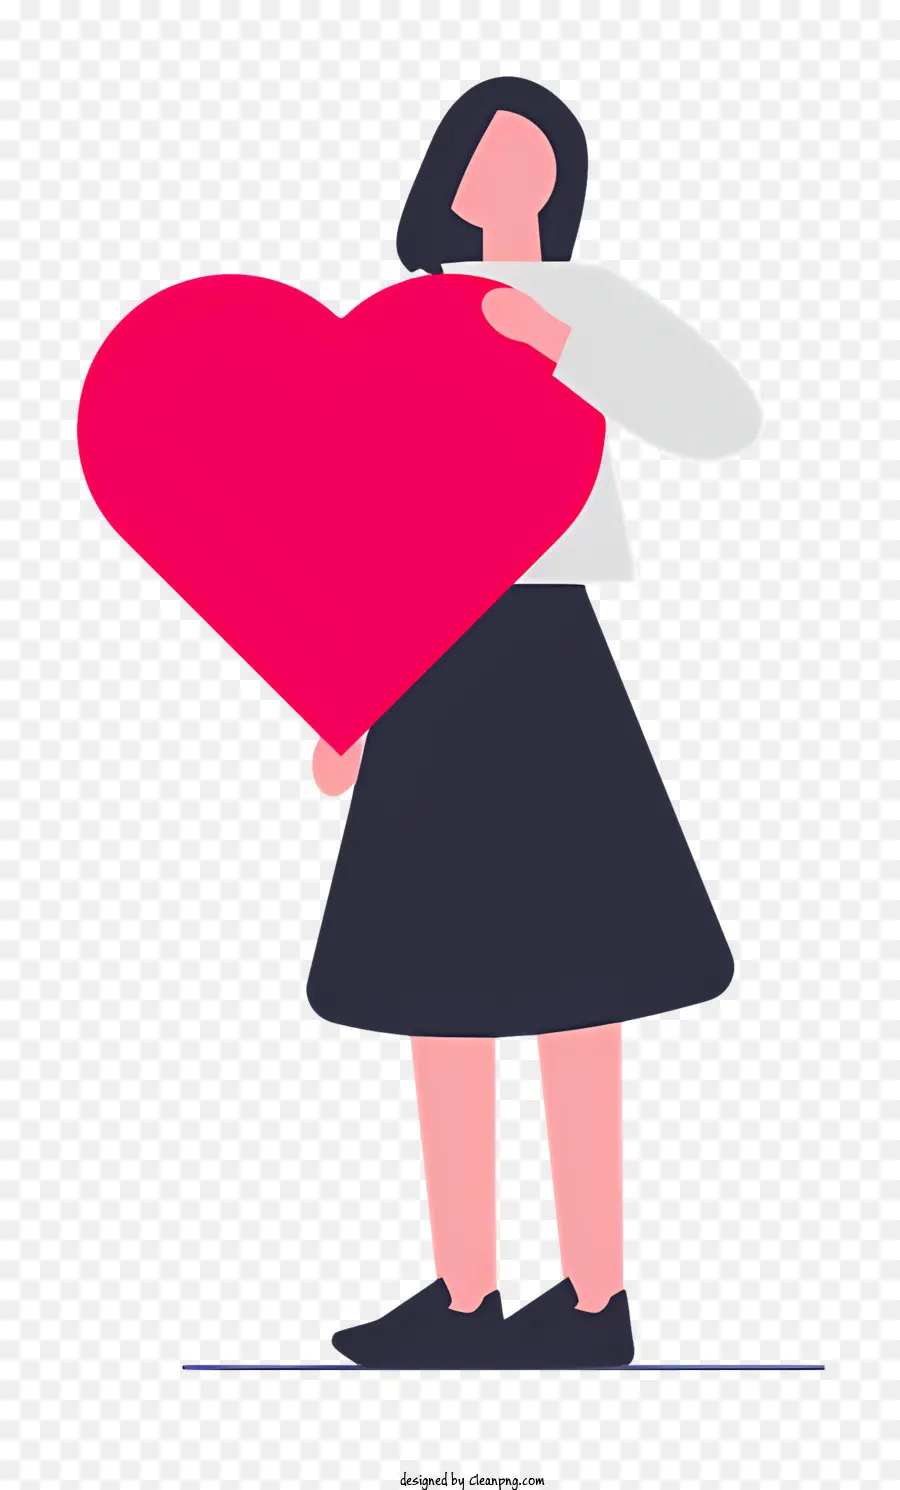 Frau Arme ausgestrecktes rosa Herz schwarzes Hemd schwarzer Rock ausgestreckt - Frau freudig vor Herz und symbolisierte Liebe